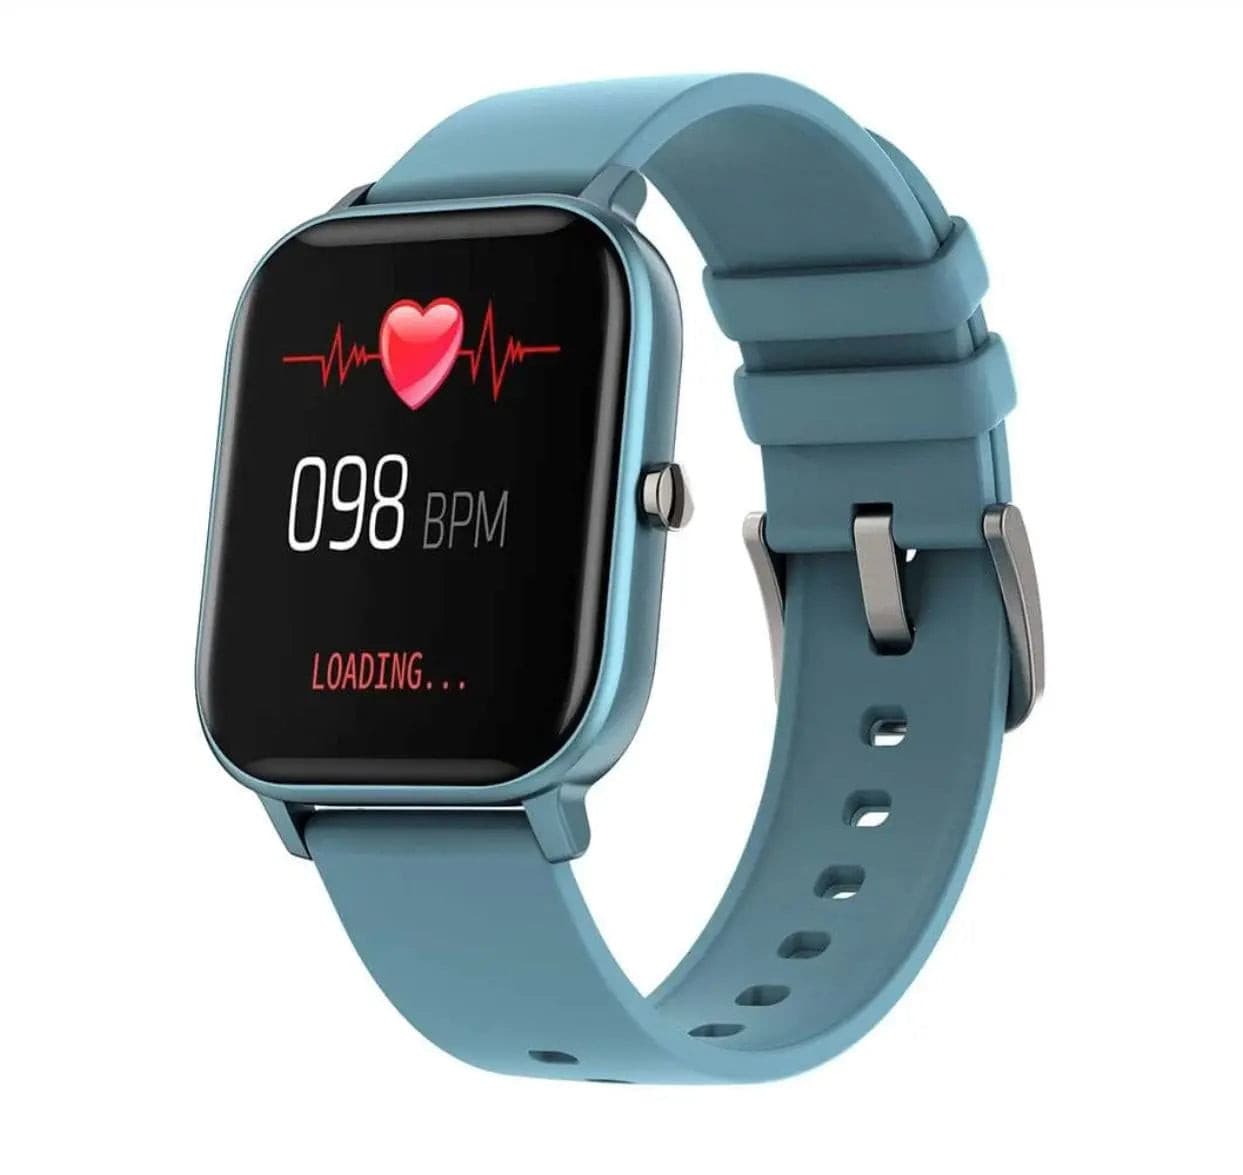 Smarwatch with SpO2, BP and Heart Rate Features, Under Rs. 5000 | फिटनेस  ट्रैकर: 5 स्मार्टवॉच जो आपका ऑक्सीजन लेवल बताएंगी, BP और हार्ट रेट पर भी  नजर रखेंगी; जानिए इनके बारे